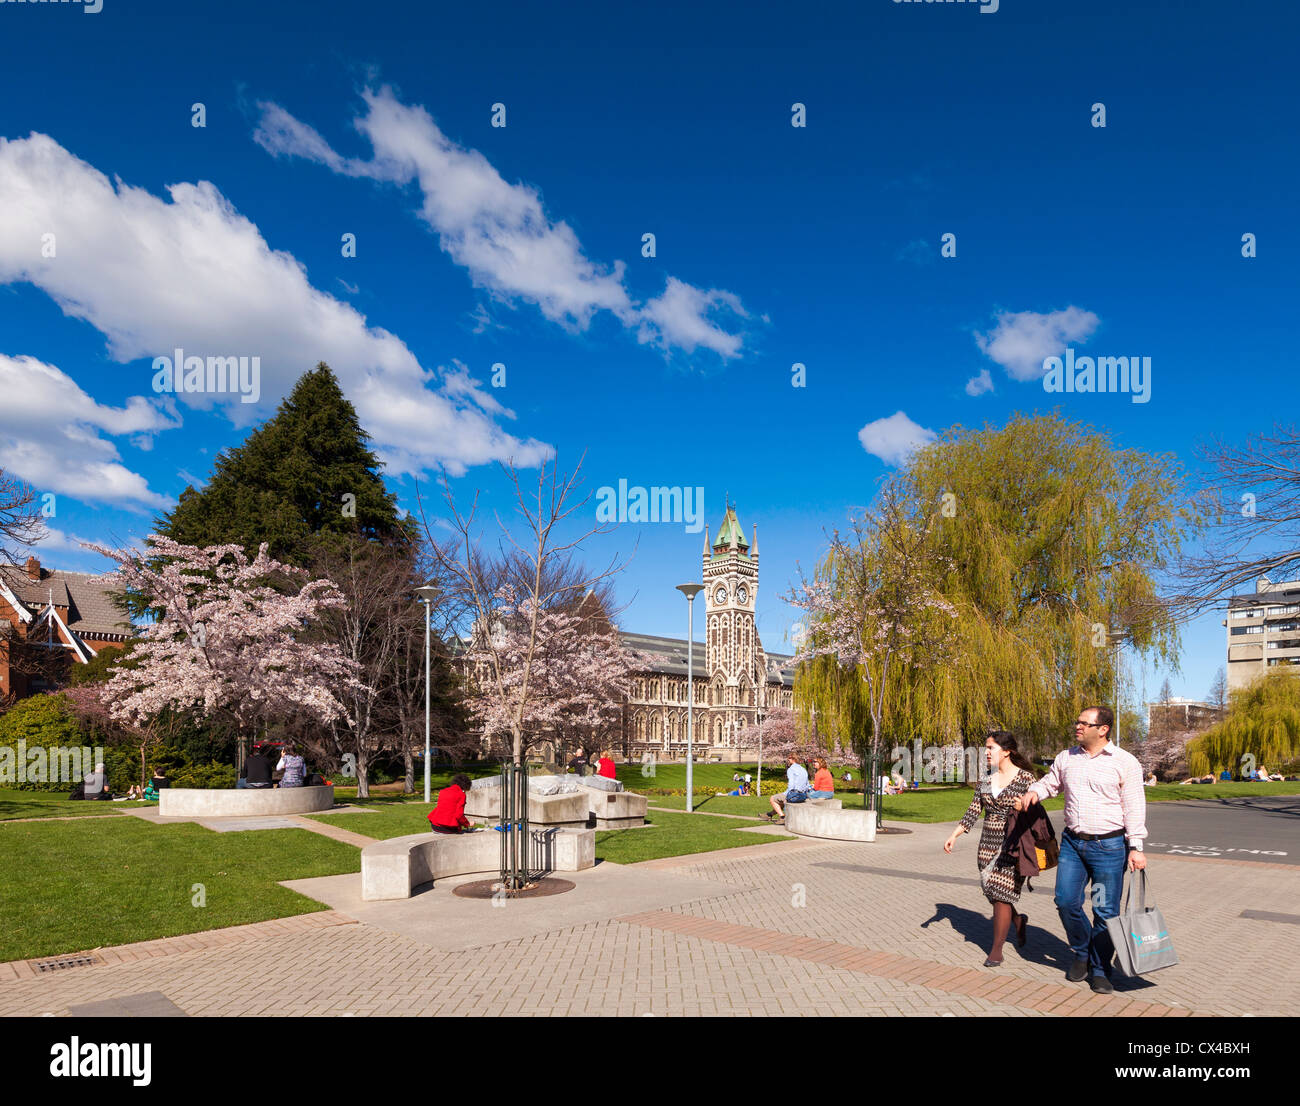 Università di Otago Campus, con la storica Torre dell Orologio edificio del Registro di sistema e la primavera sbocciano i fiori. Foto Stock